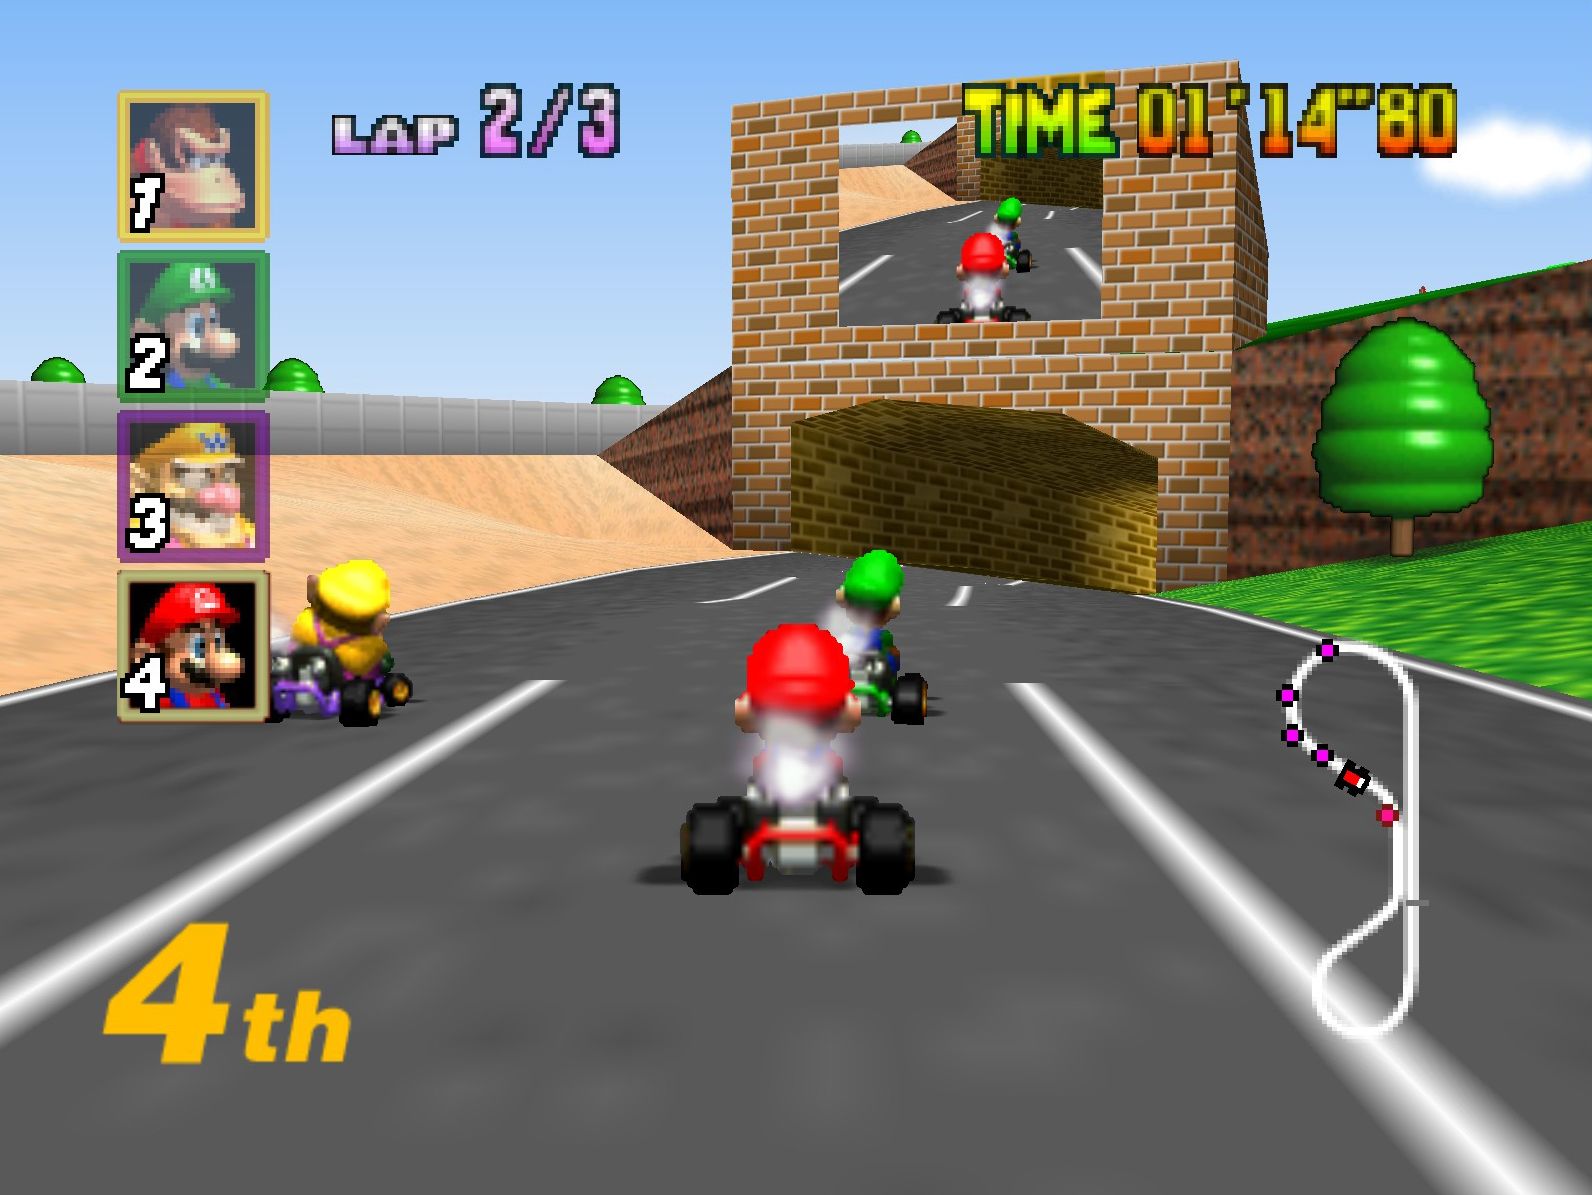 N64 games image 8